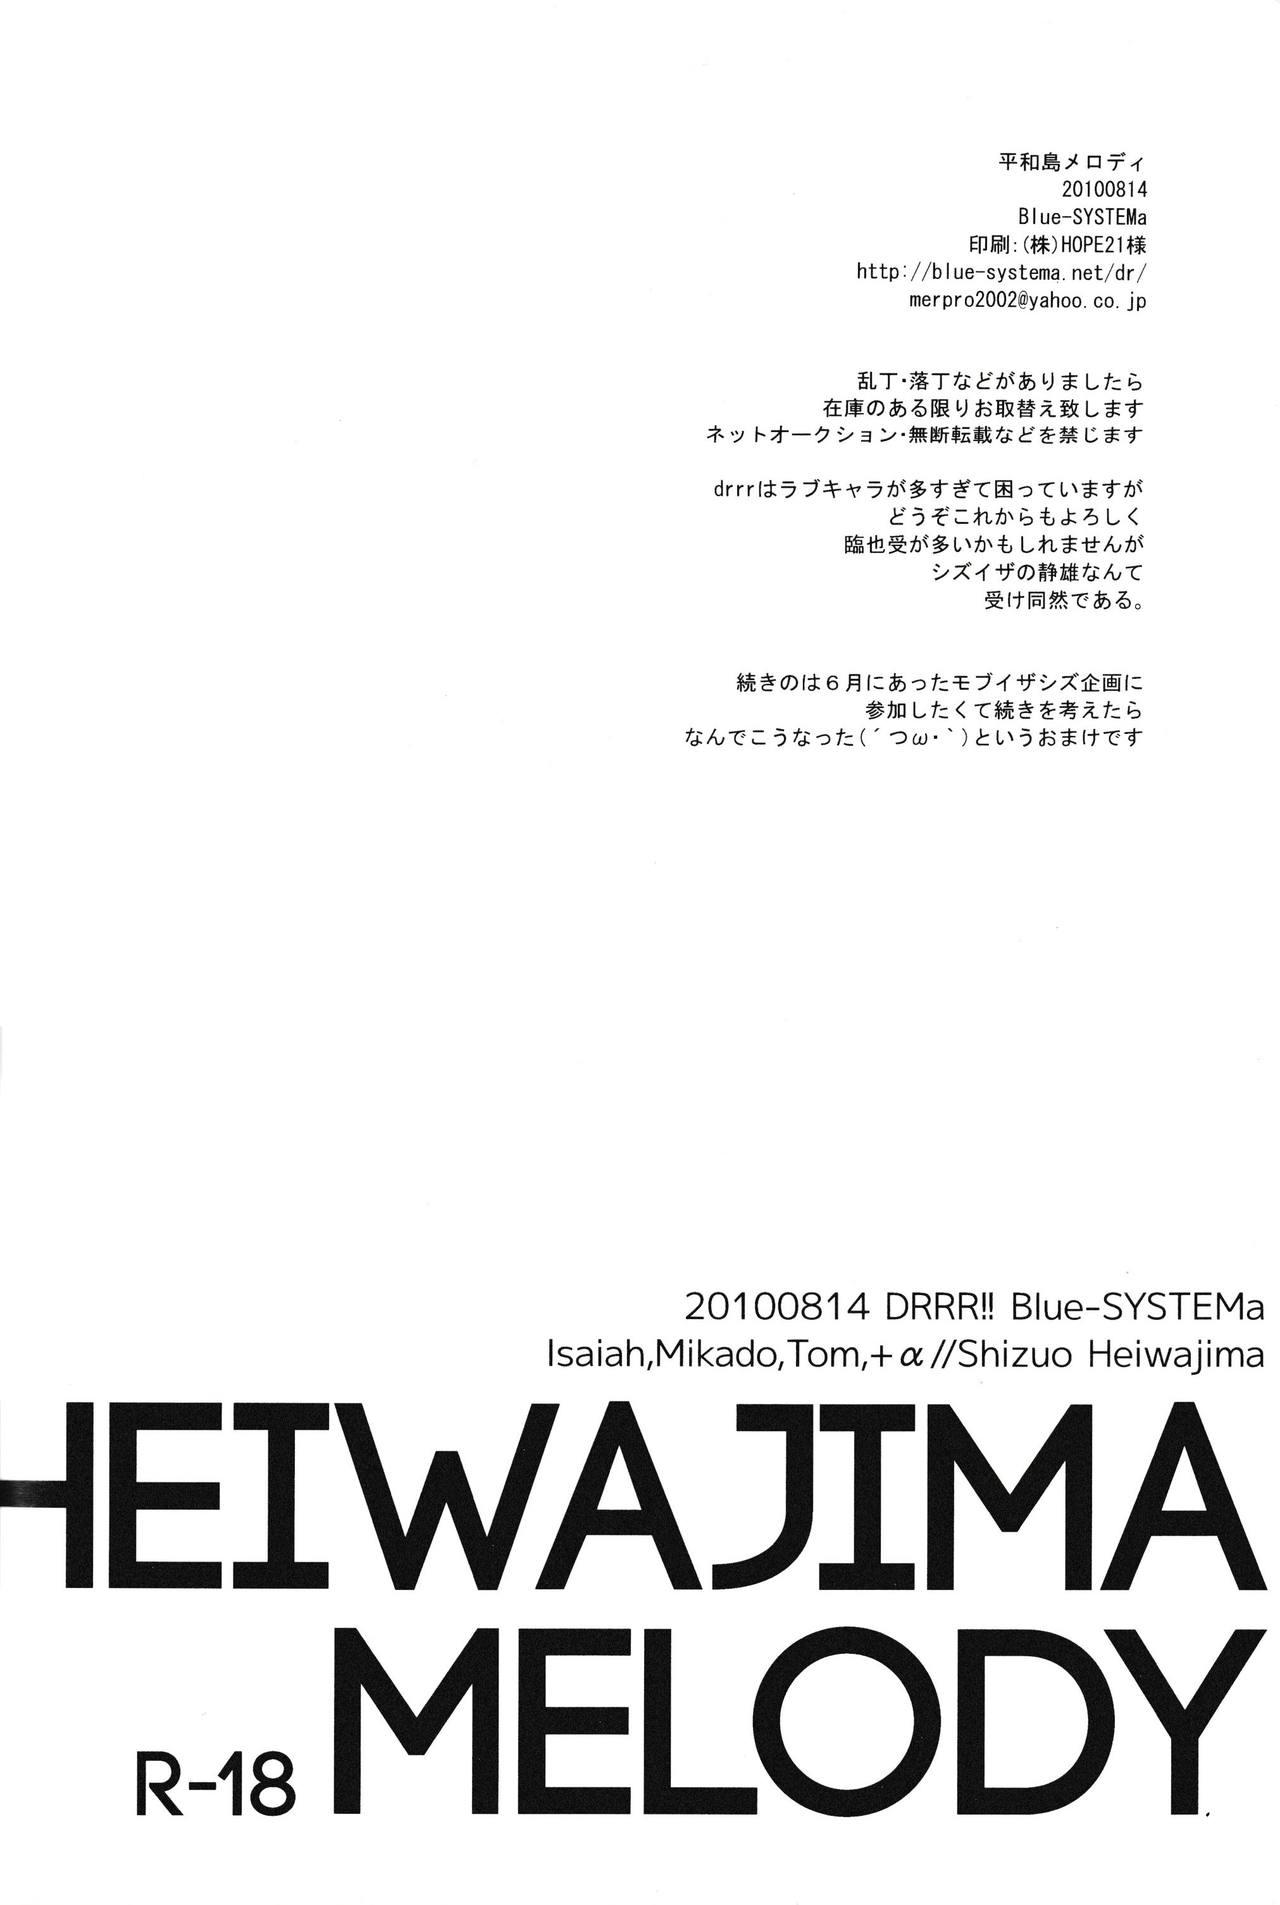 Heiwajima Melody 27